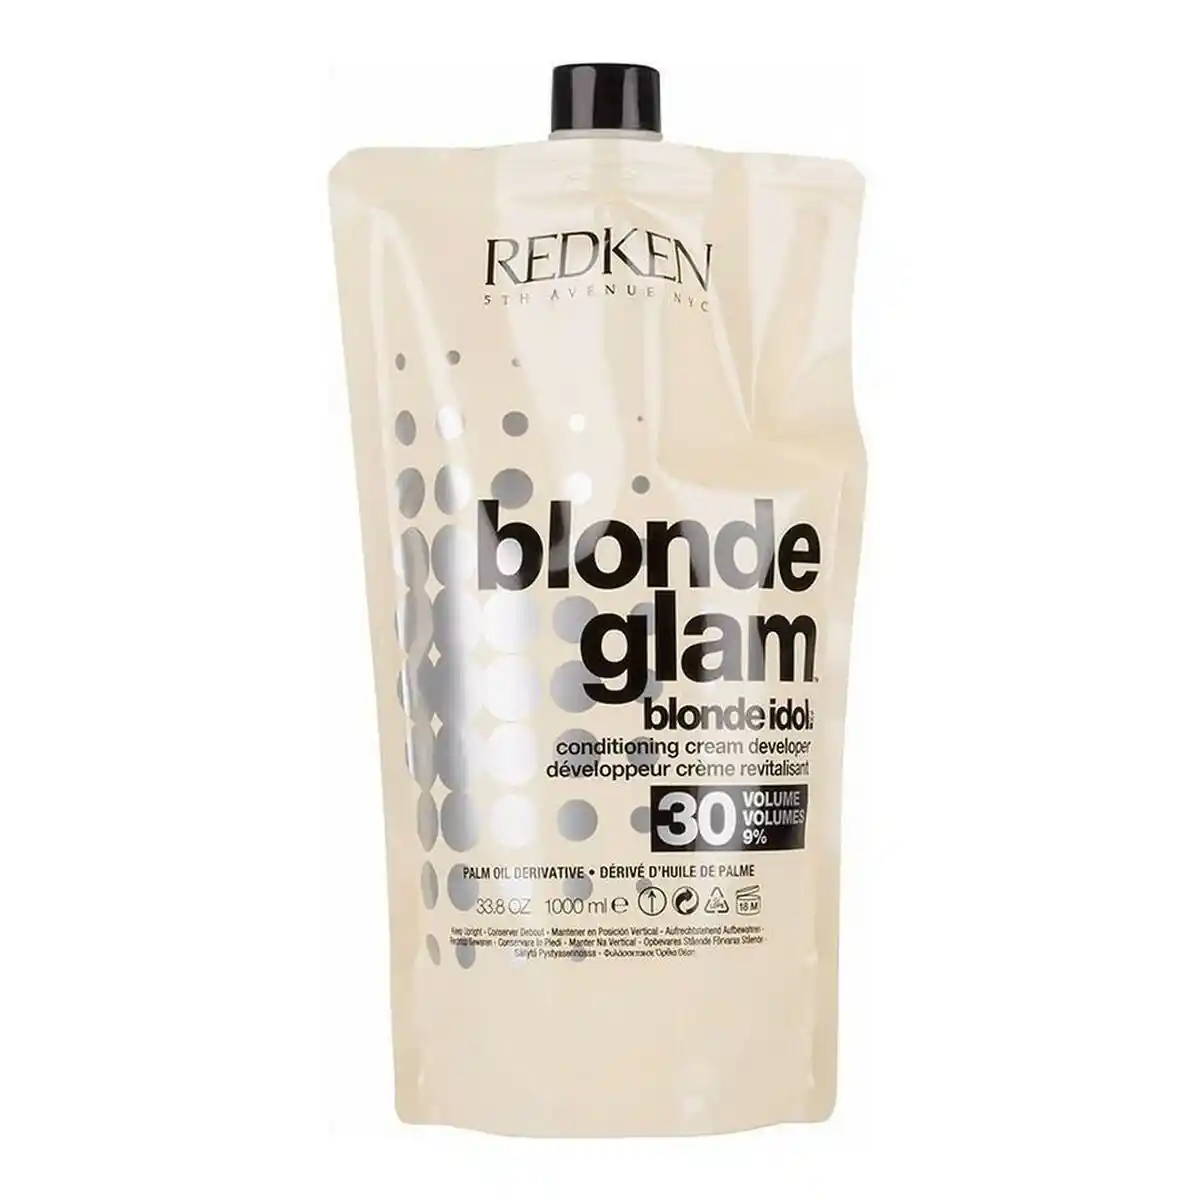 Apres shampooing redken blonde idol 30 vol 9 1000 ml _7257. DIAYTAR SENEGAL - Là où Chaque Produit Est une Trouvaille. Explorez notre sélection minutieuse et découvrez des articles qui correspondent à votre style de vie et à vos aspirations.